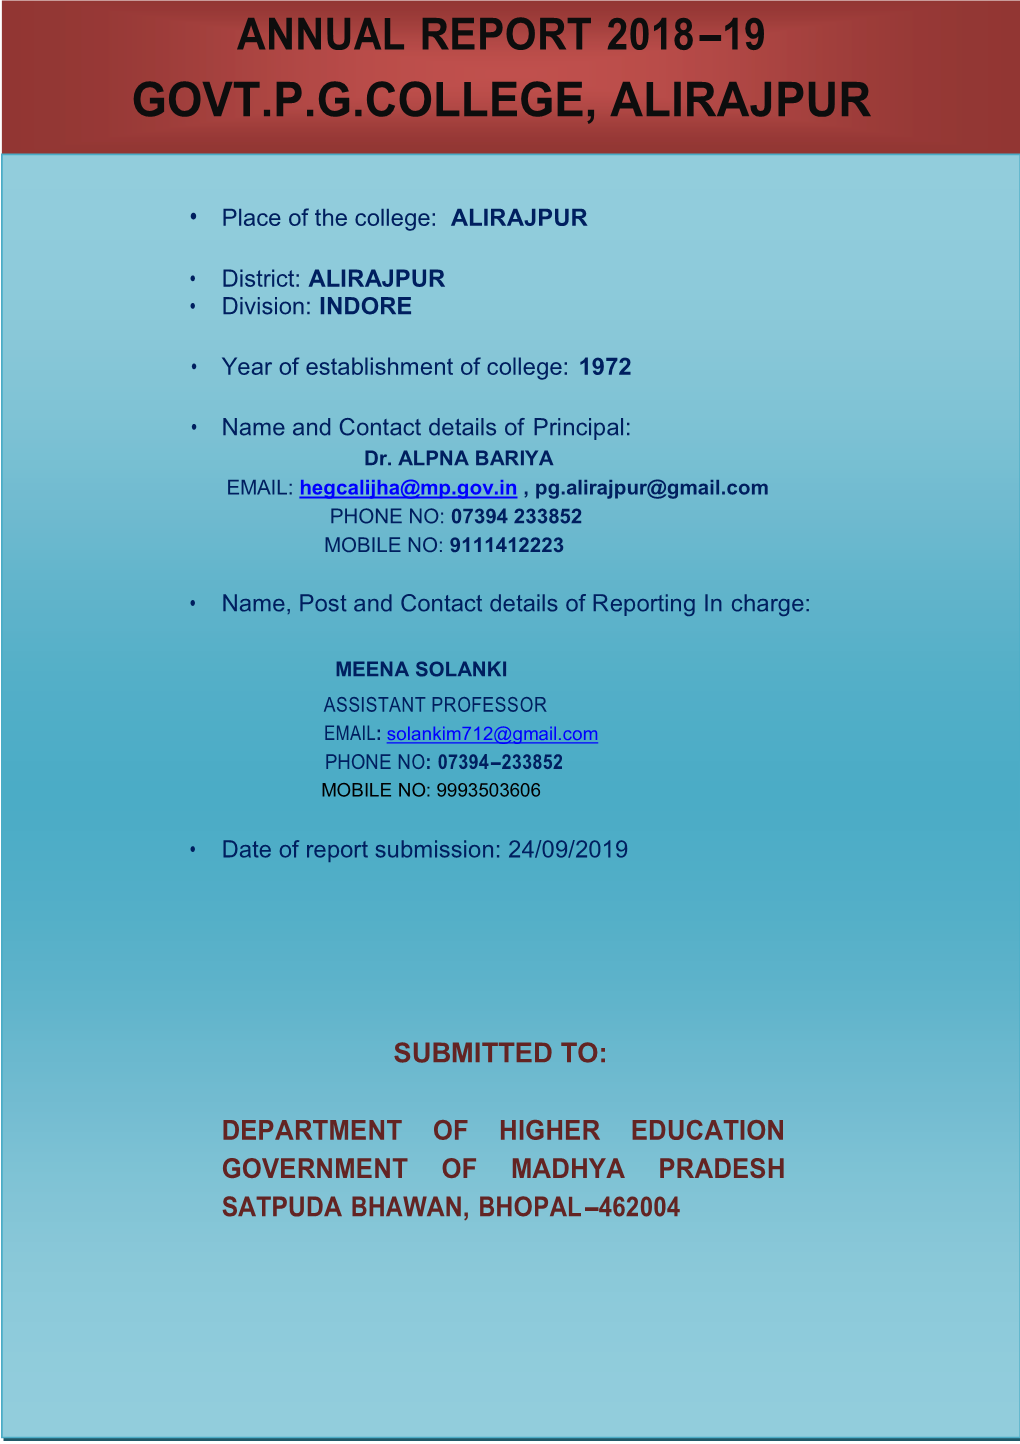 Annual Report 2018-19 Govt.P.G.College, Alirajpur